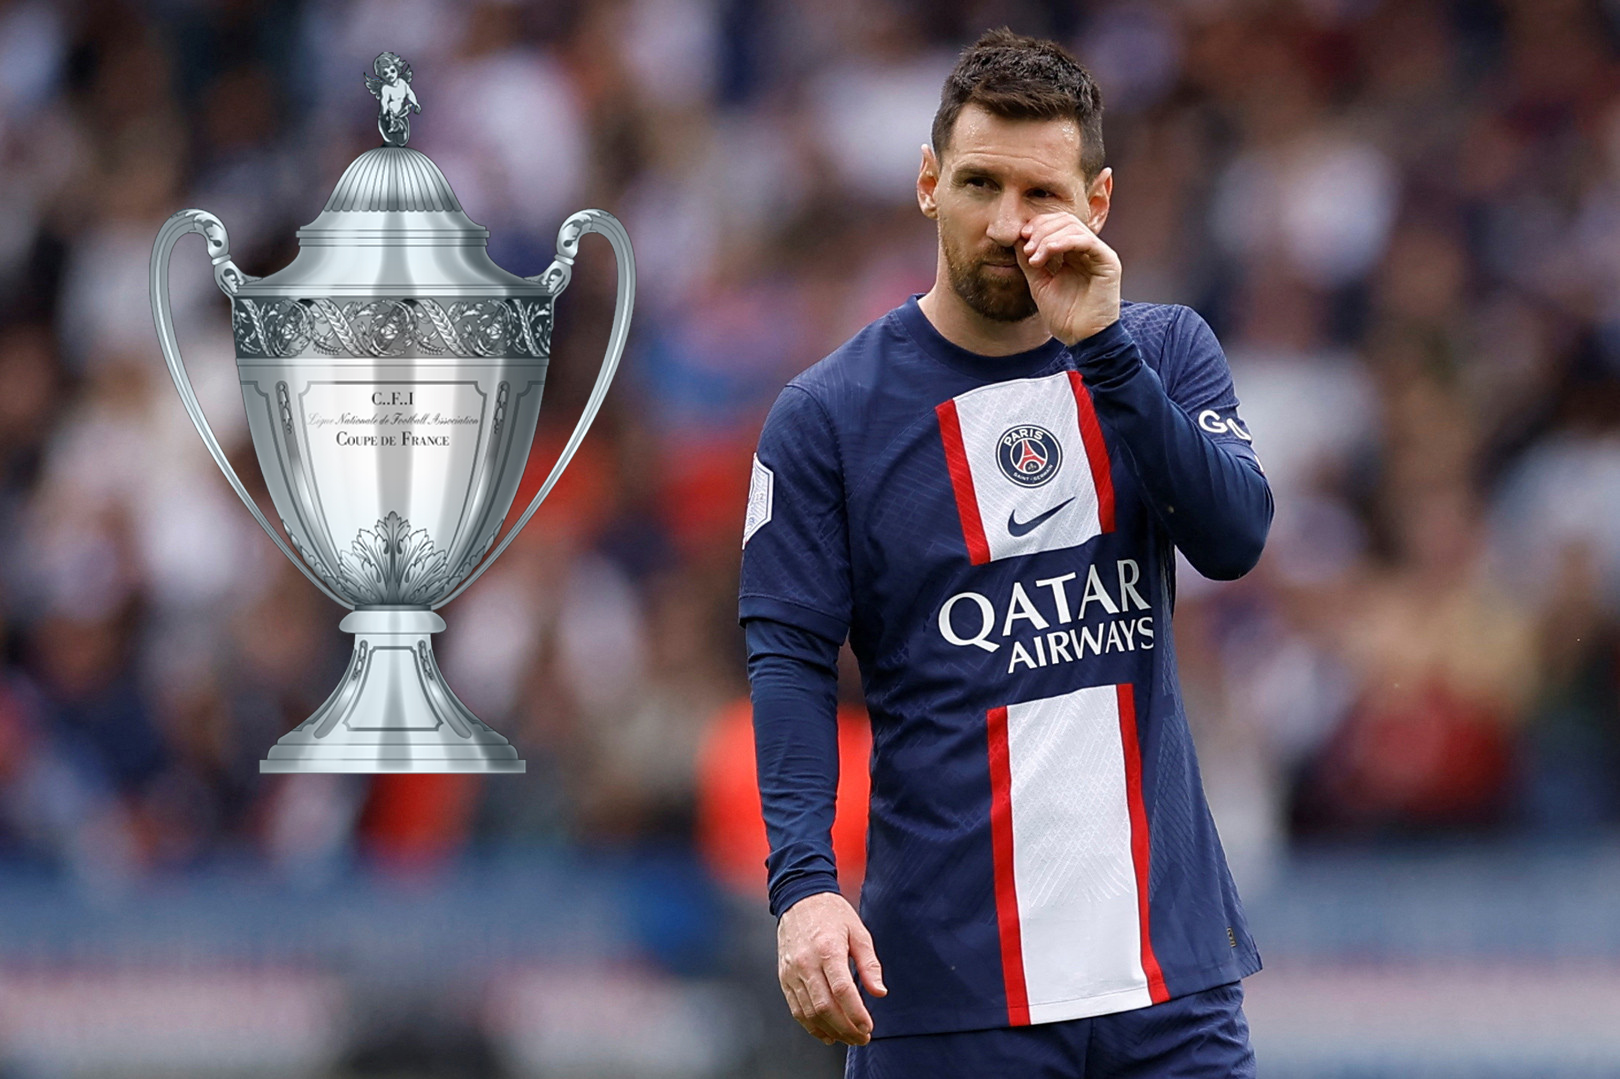 Hé lộ danh hiệu duy nhất Messi bỏ lỡ trong sự nghiệp - Ảnh 1.